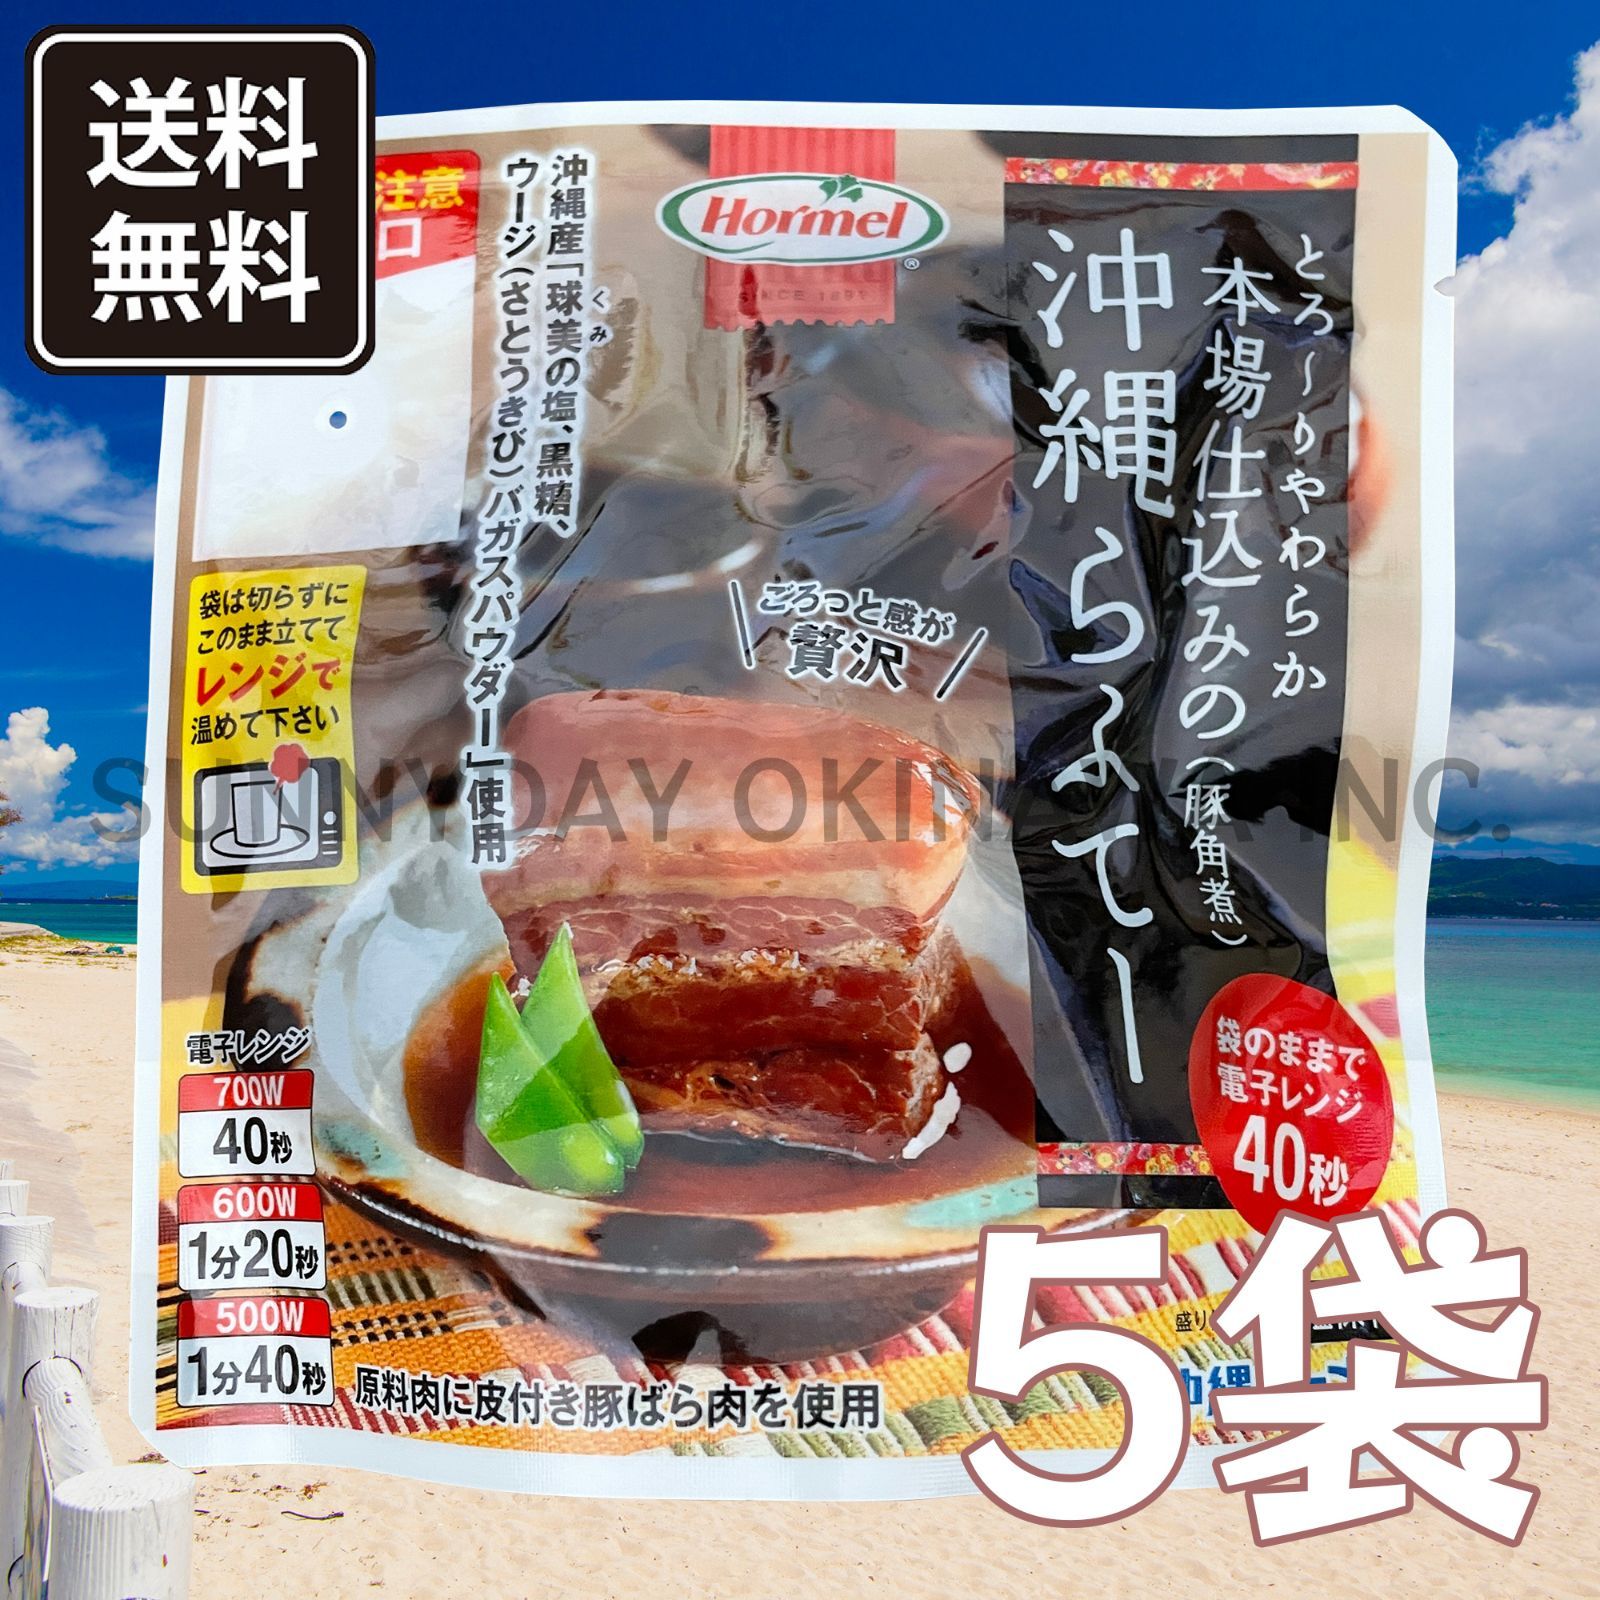 本場仕込みの沖縄らふてー 5袋 沖縄ホーメル 豚の角煮 ラフテー 沖縄